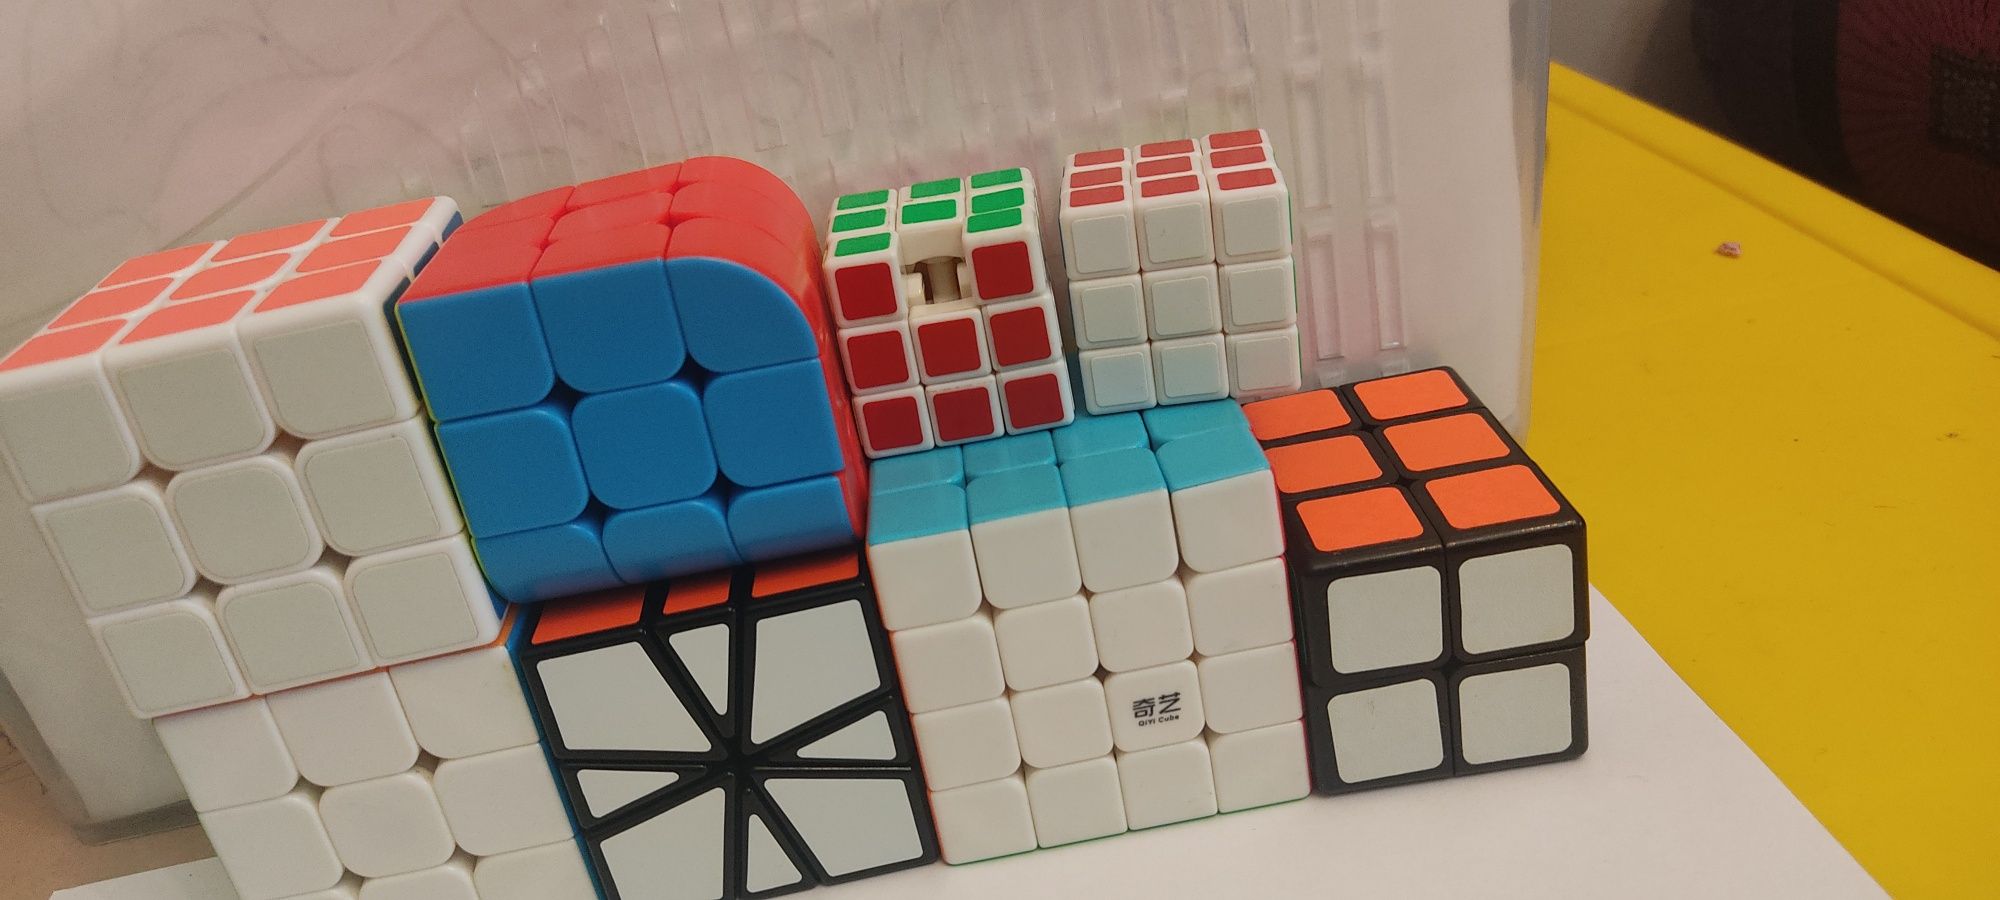 ПРОДАМ Кубик  Рубика